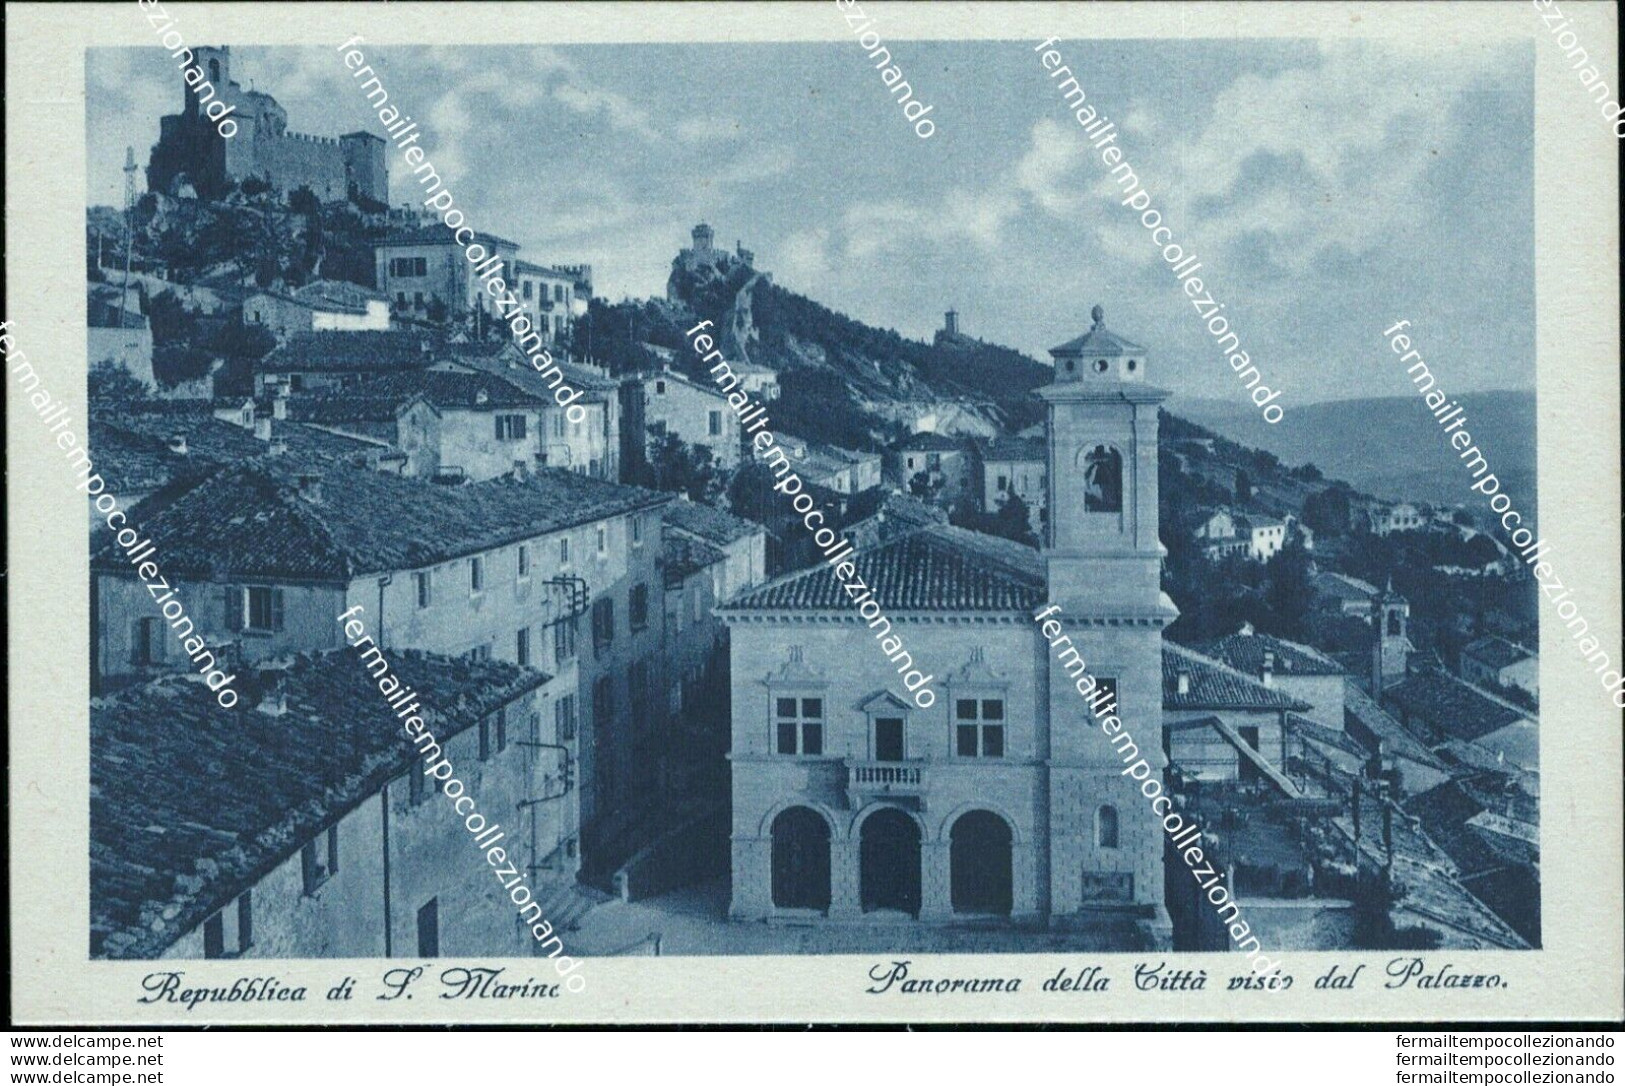 Ba15 Cartolina Repubblica Di San Marino Panorama Della Citta' Visto Dal Palazzo - San Marino